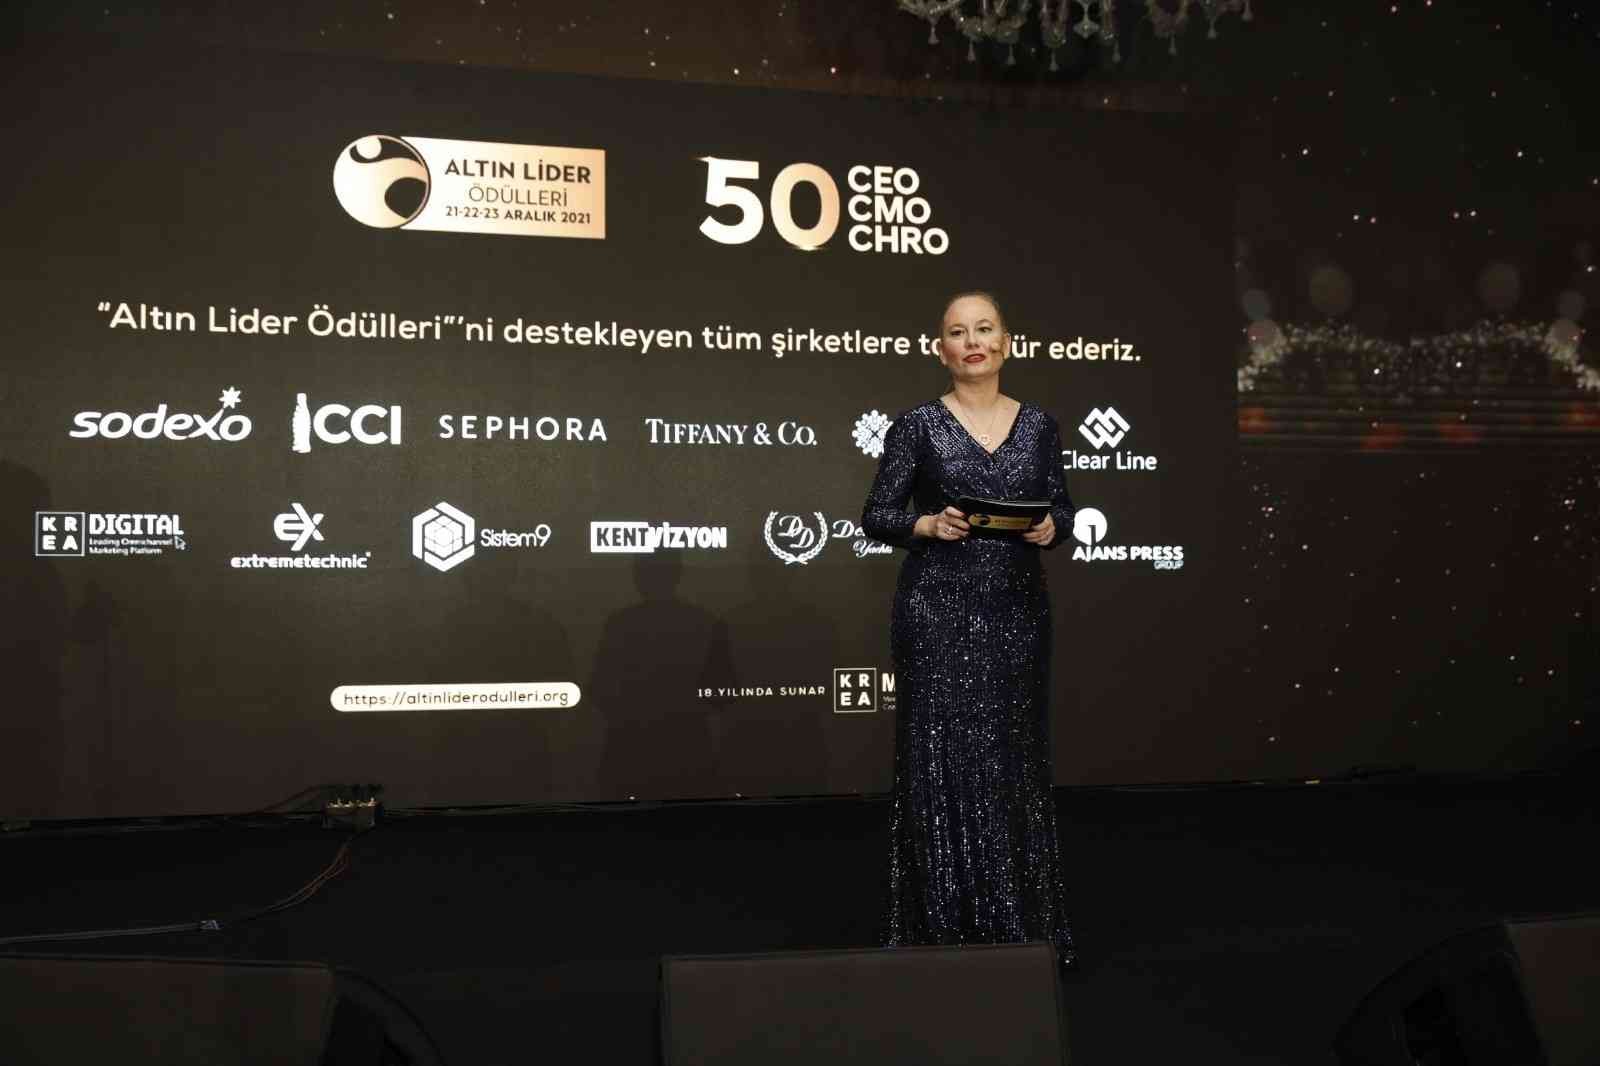 Türkiye’nin beğenilen CEO’ları ödüllerini aldı